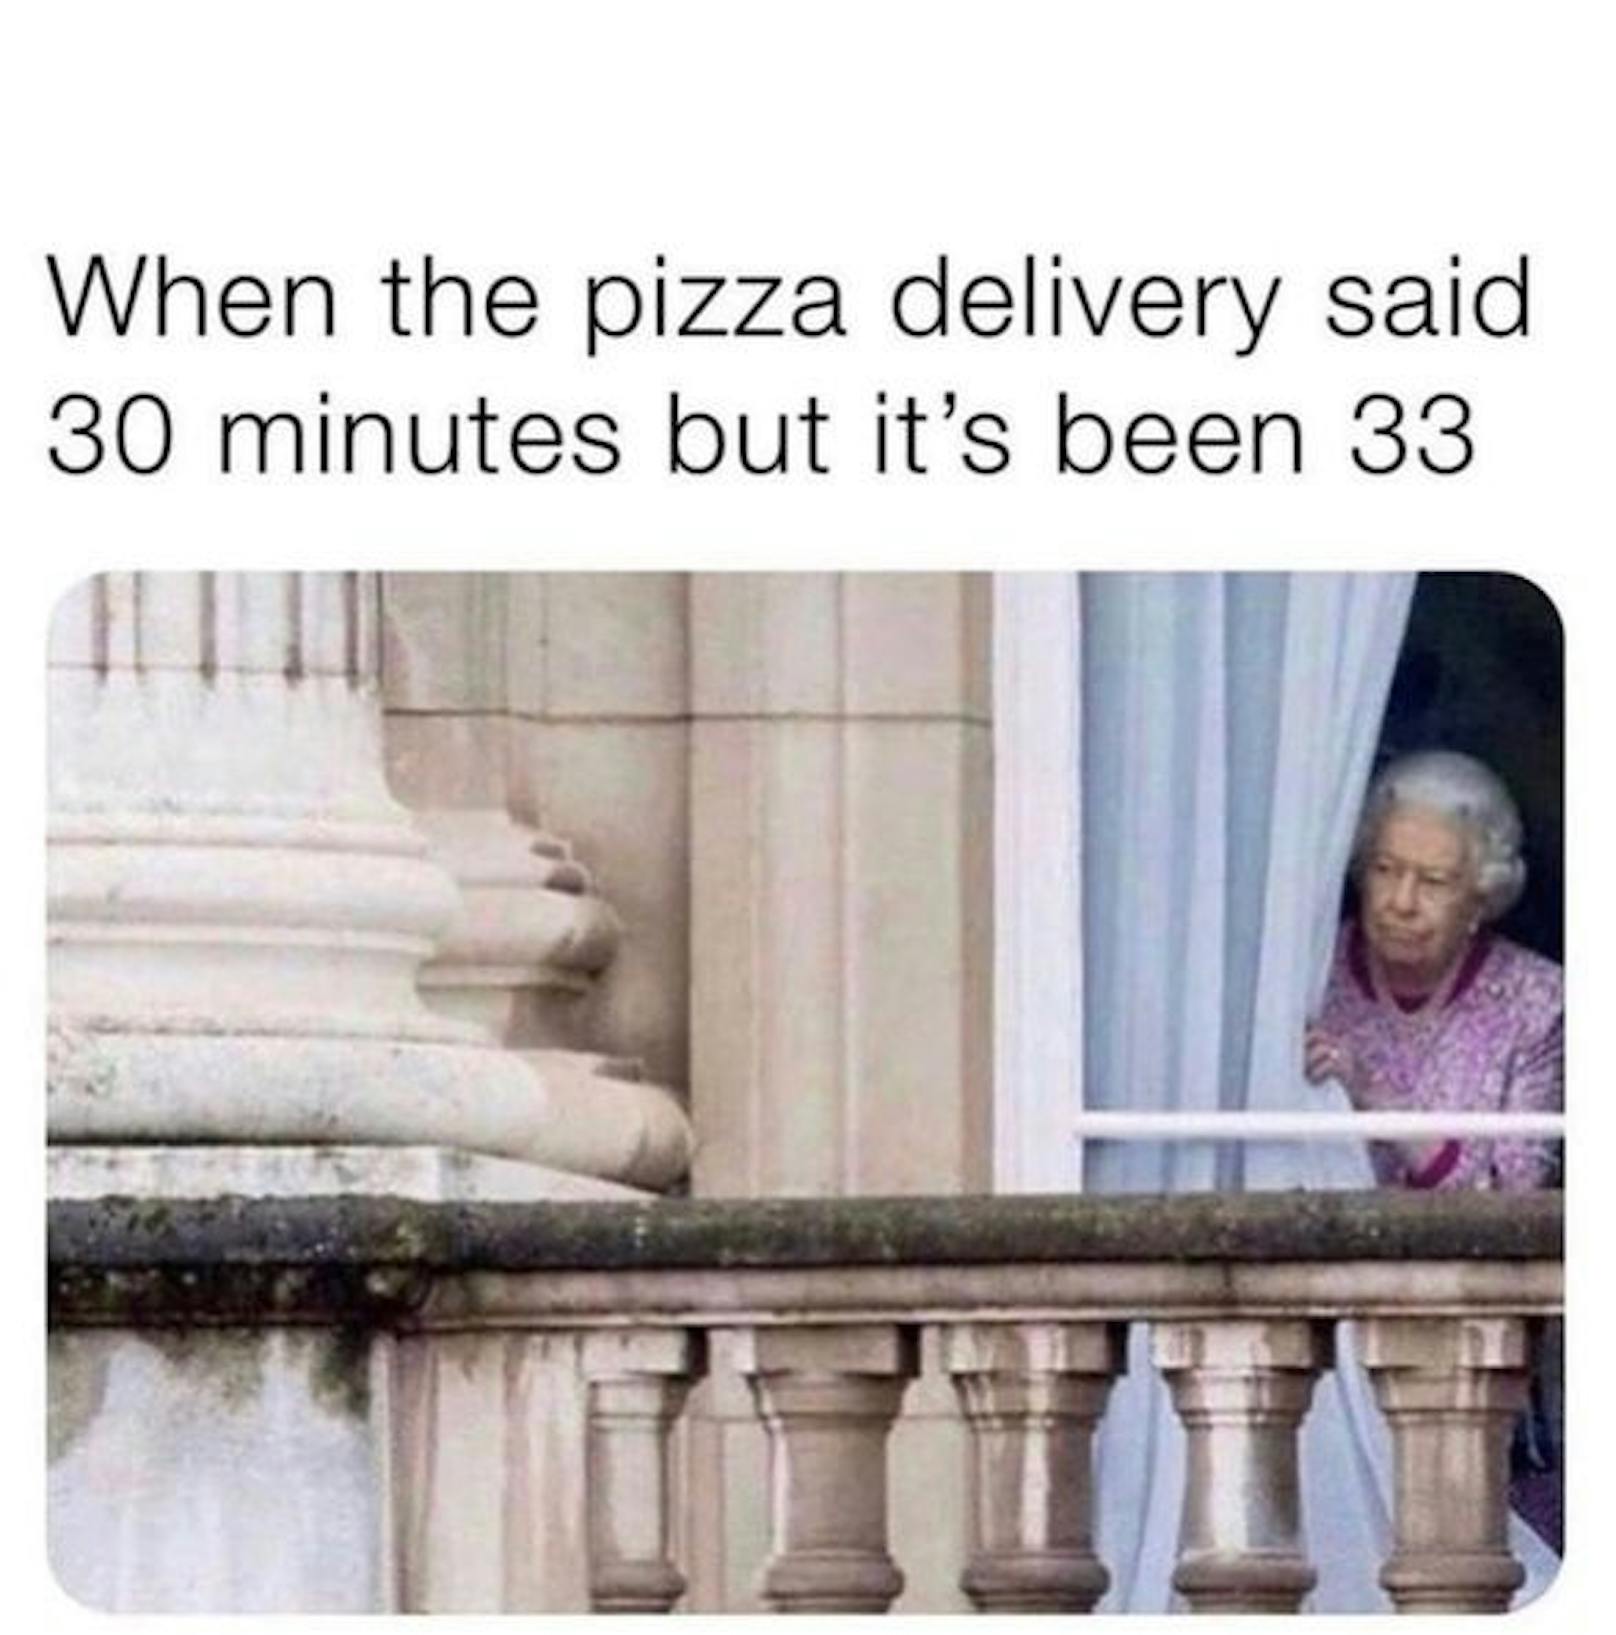 "Wenn der Pizza-Lieferant 30 Minuten brauchen sollte, nun aber schon 33 Minuten verstrichen sind."